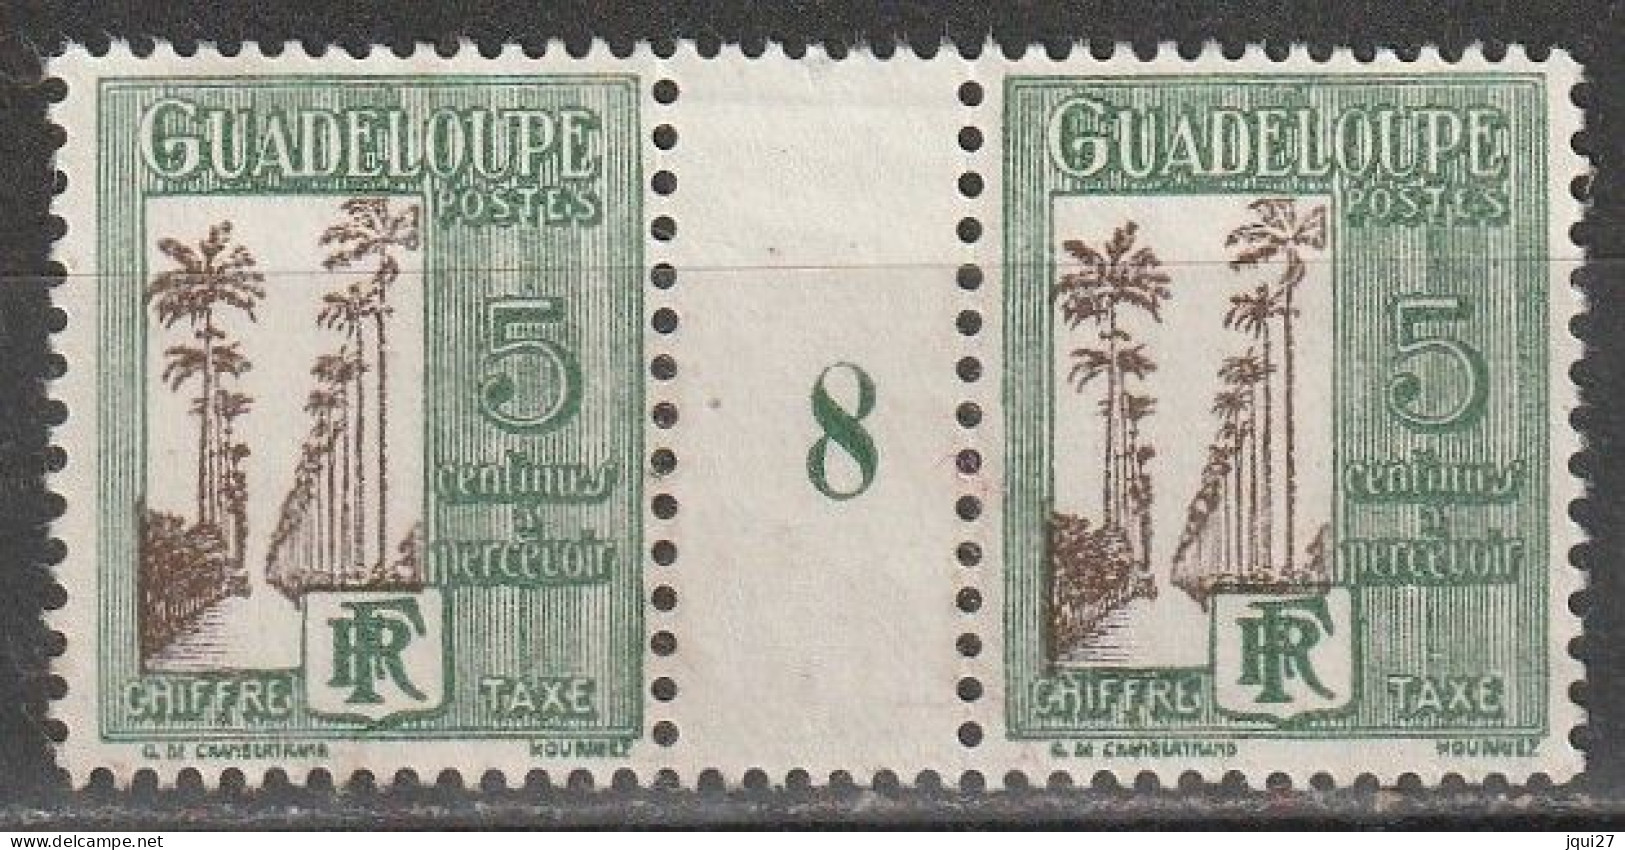 Guadeloupe Timbre Taxe N° 27 * Millésime 8 Voir Description - Postage Due